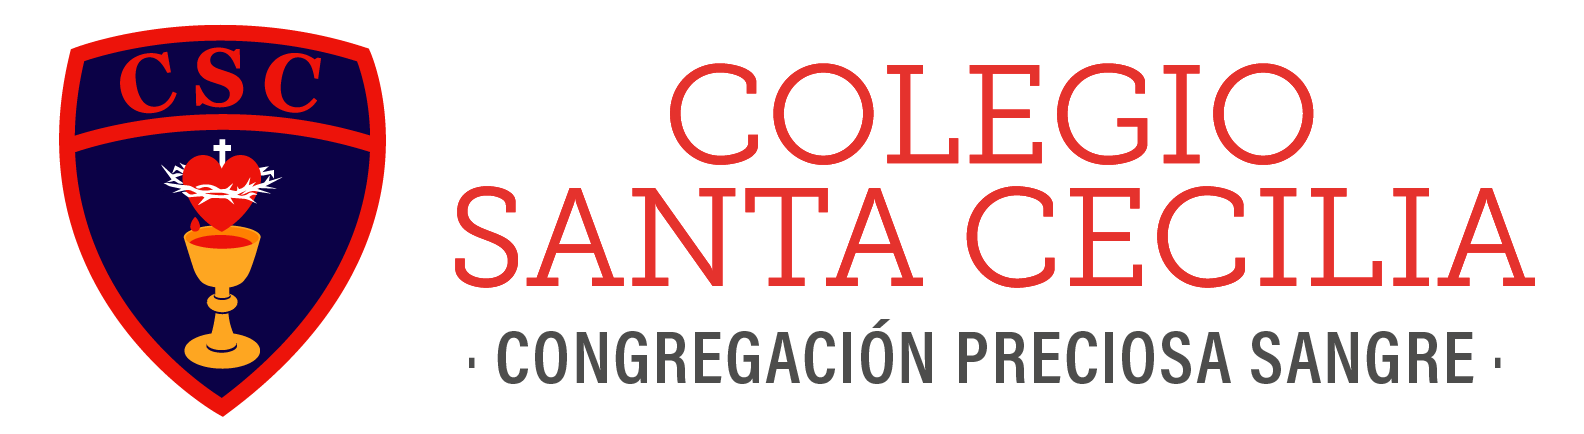 Colegio Santa Cecilia - CPS Chile